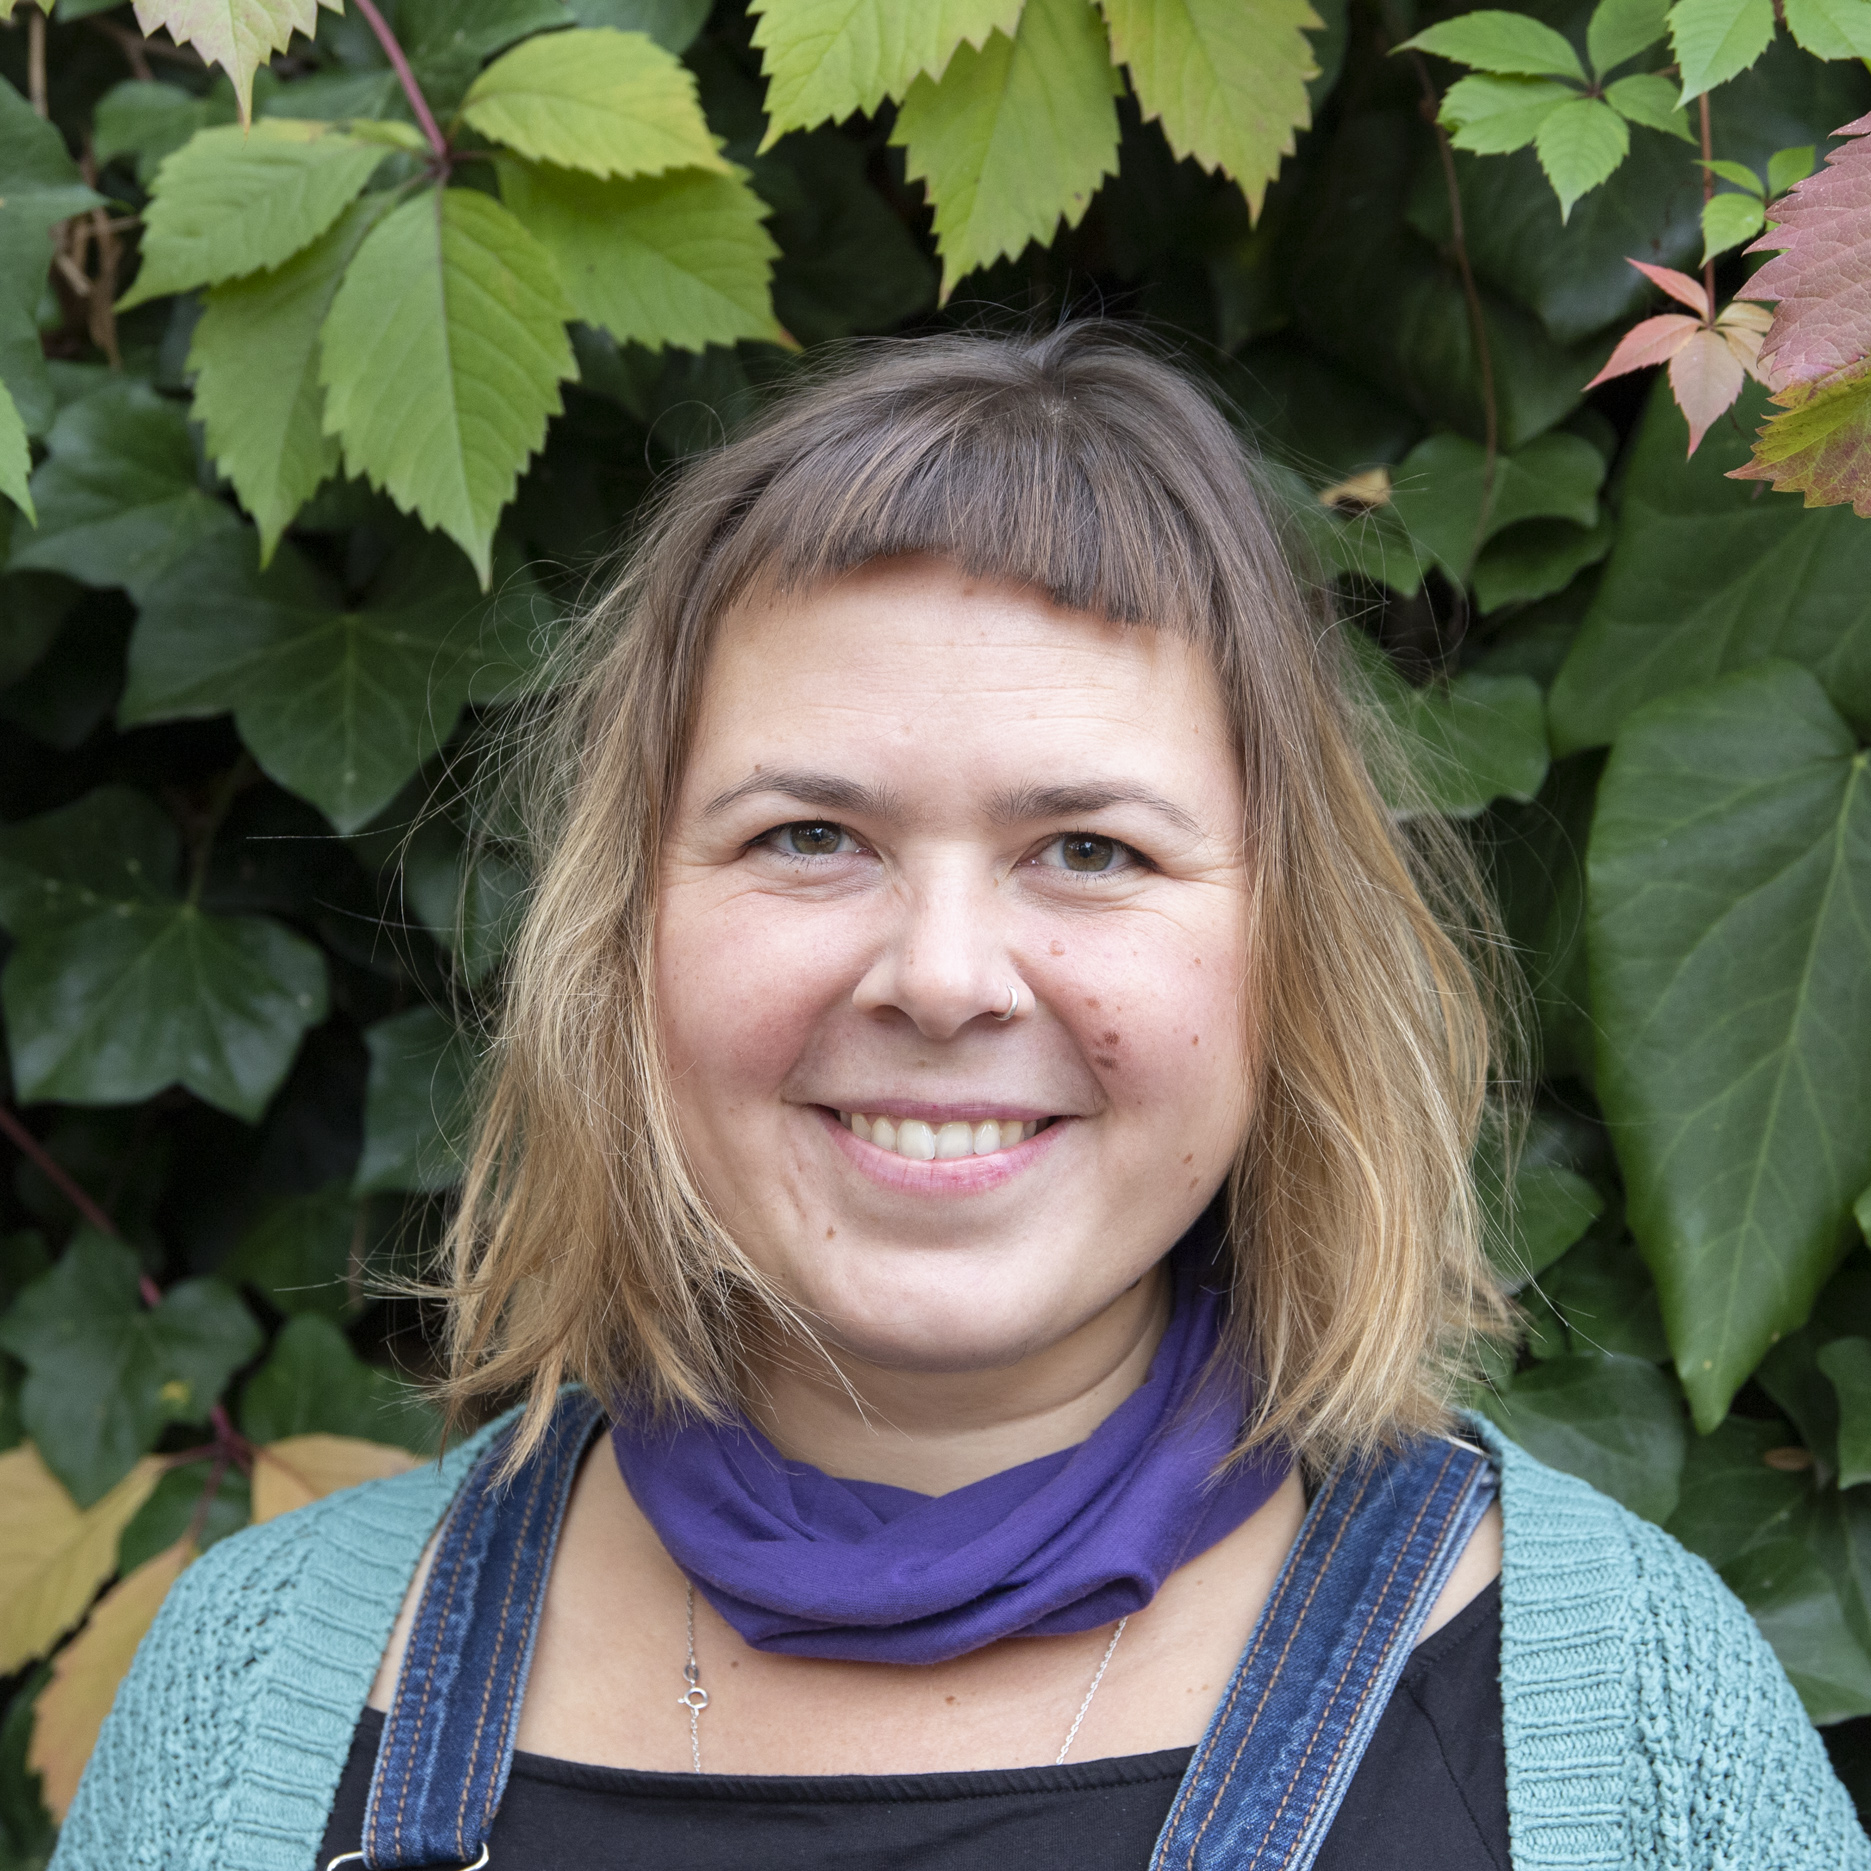 Portrait von Kollektivmitglied Katrin vor einem Busch mit grünen Blättern. Sie hat einen Pony, trägt einen lilanen Schal und eine türkisene Strickjacke und lächelt.